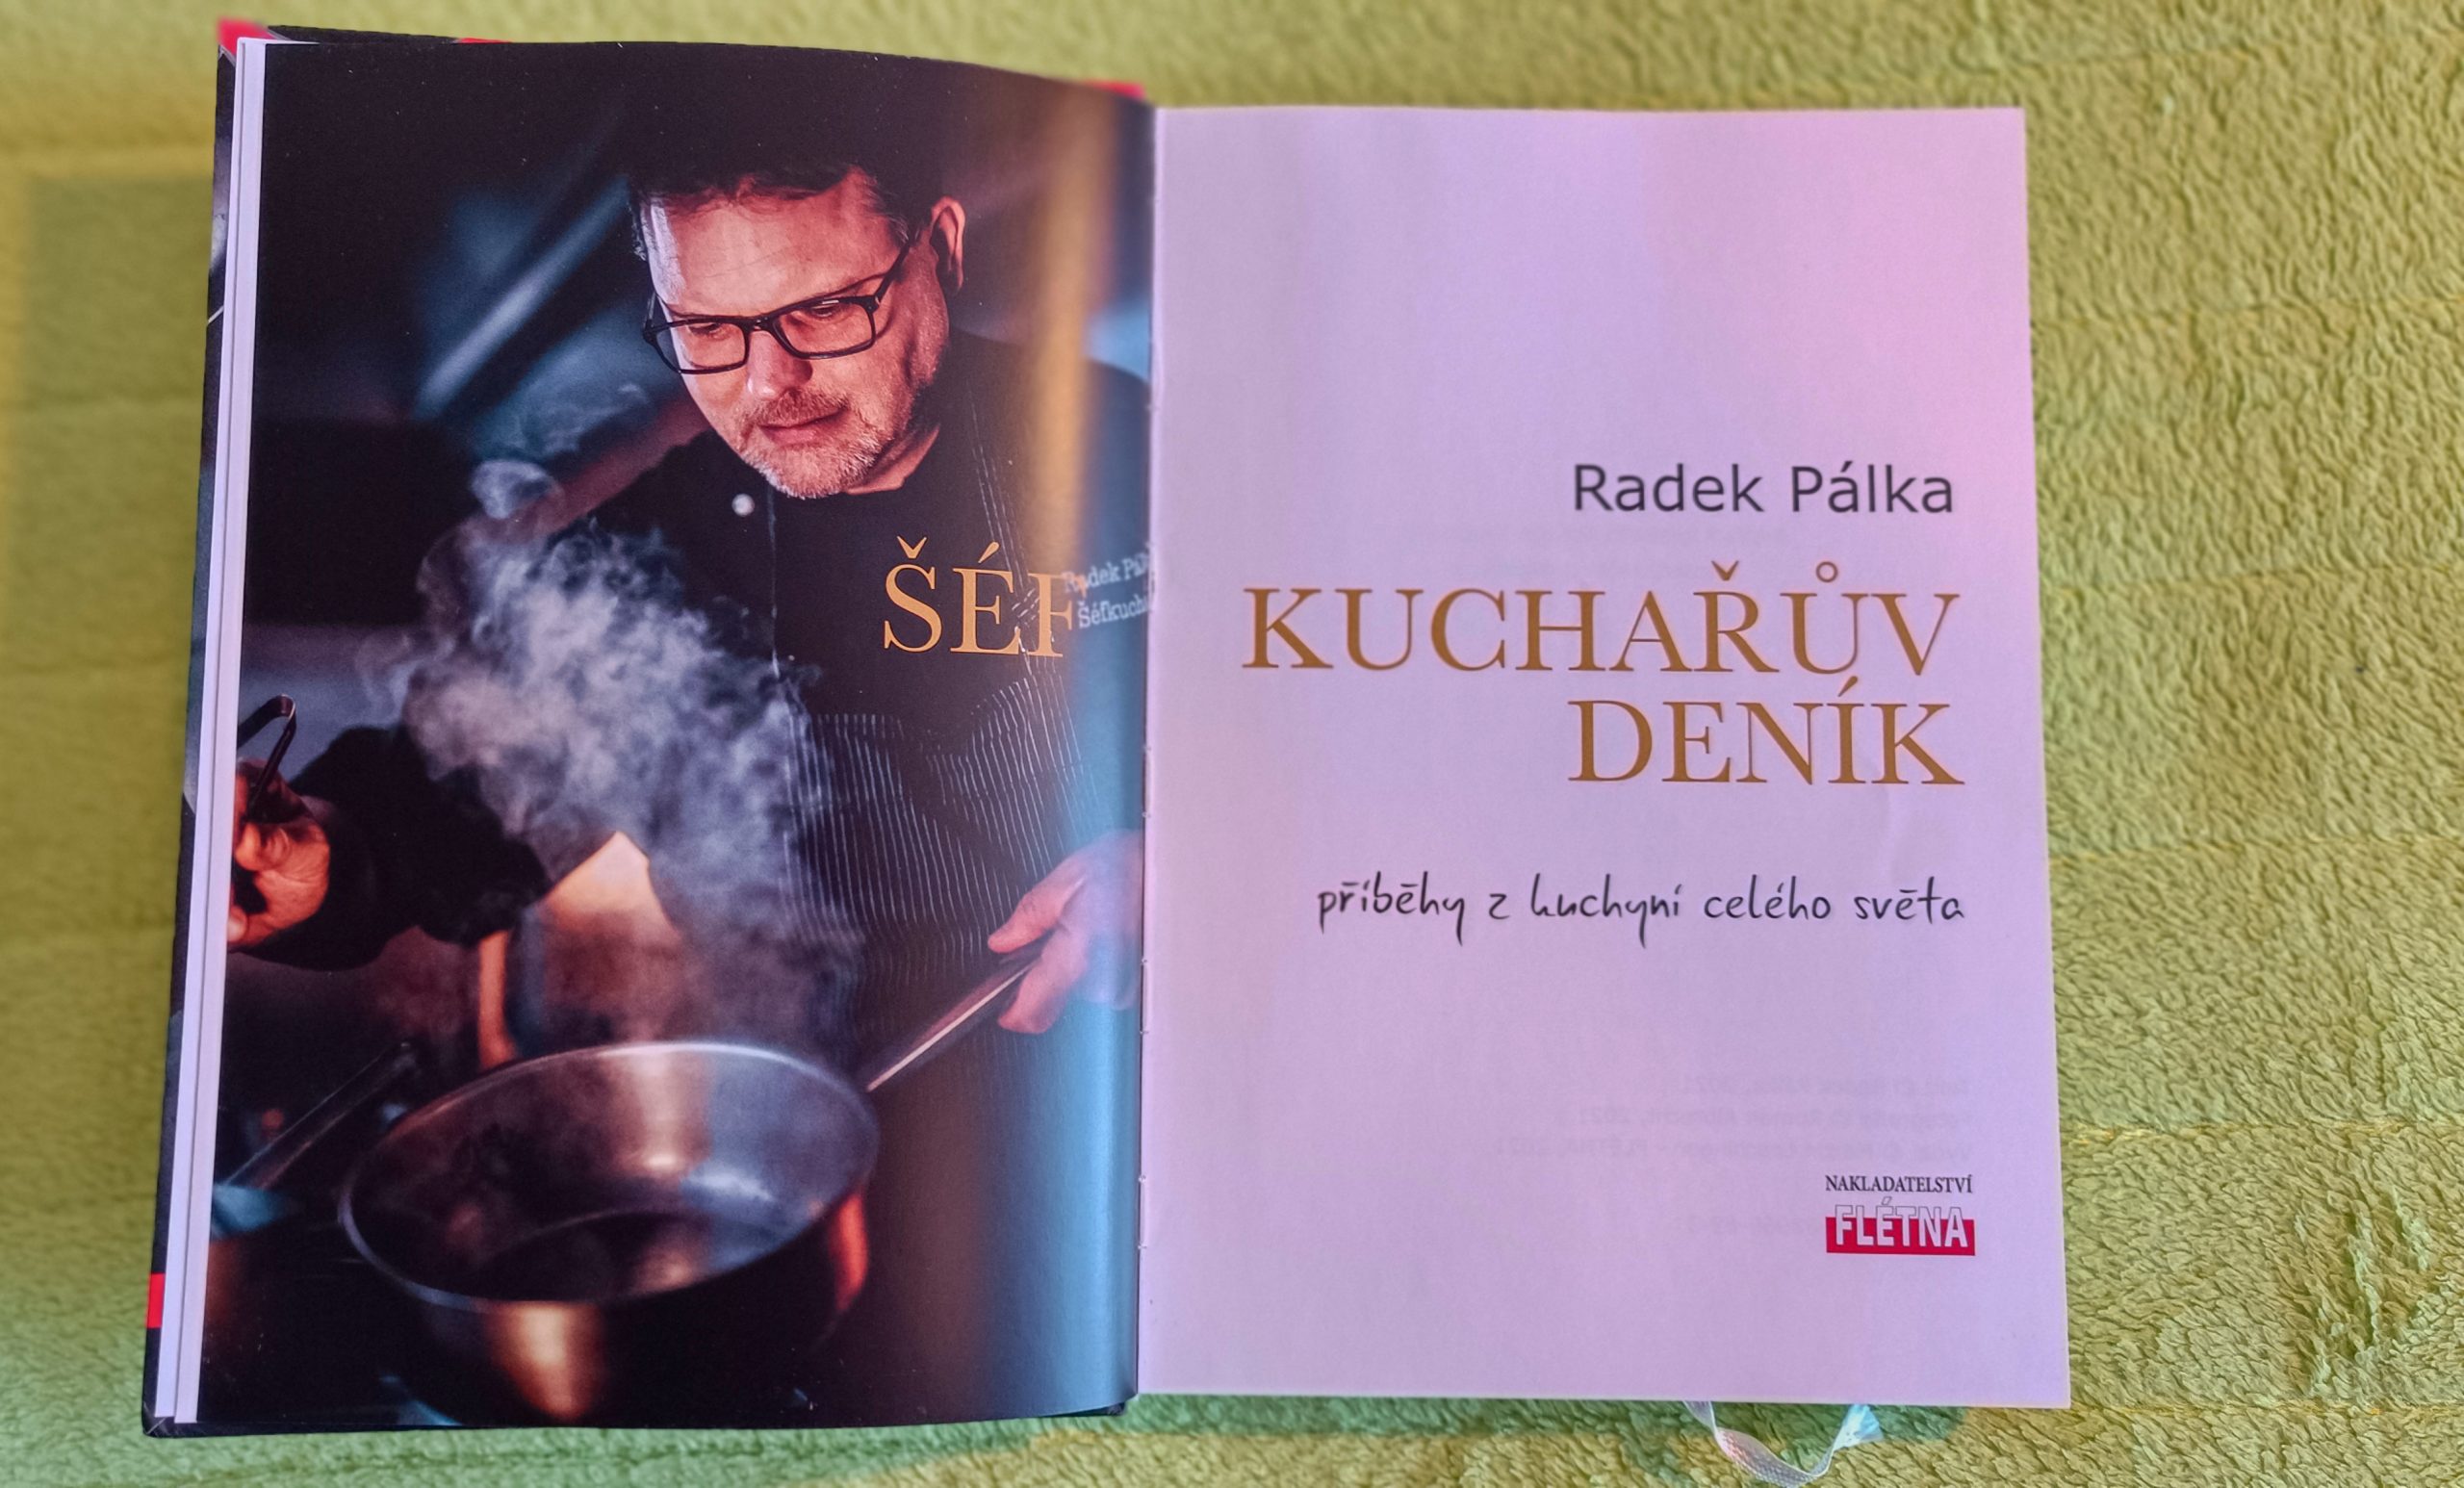 Šéfkuchařův deník od Radka Pálky